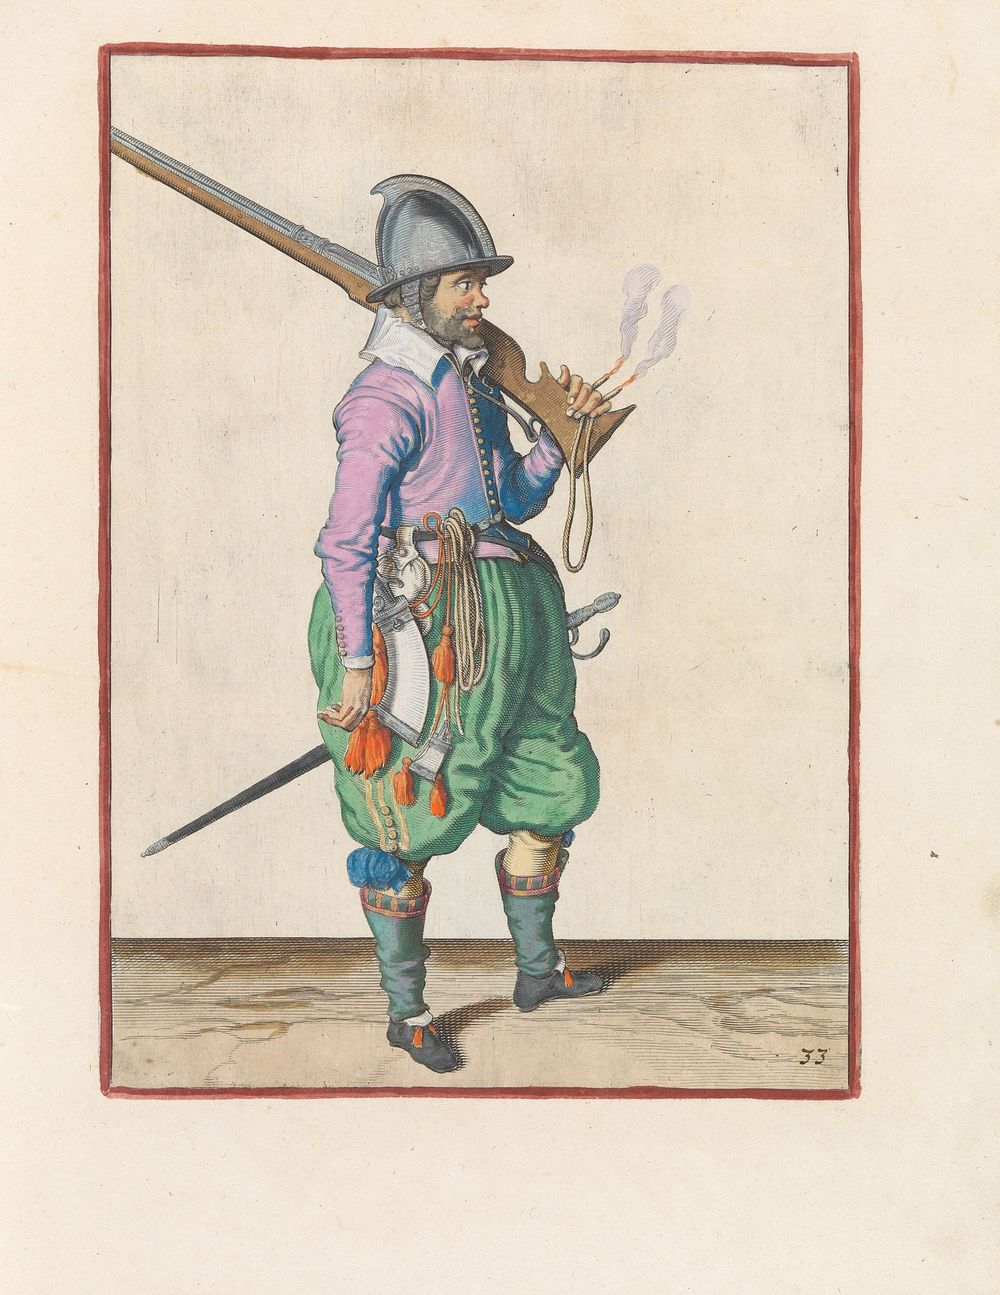 Soldaat die zijn roer op zijn schouder draagt (c. 1597 - 1607) by Jacques de Gheyn II and Jacques de Gheyn II